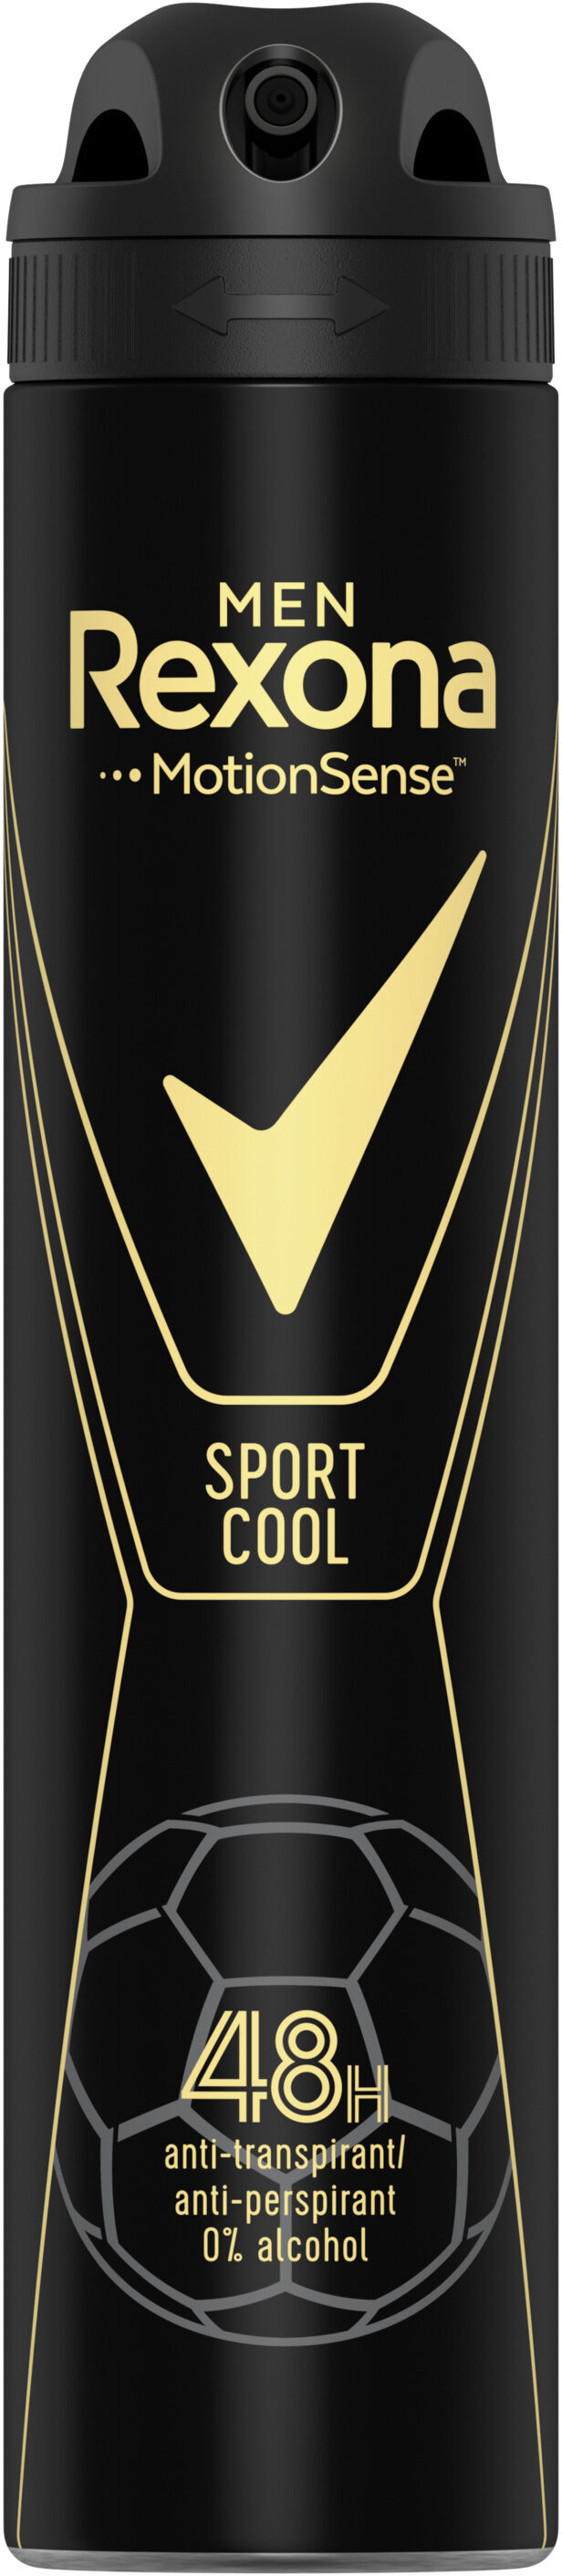 REXONA MEN Déodorant Homme Spray Anti-Transpirant Sport Cool 200ml - מוצר - fr